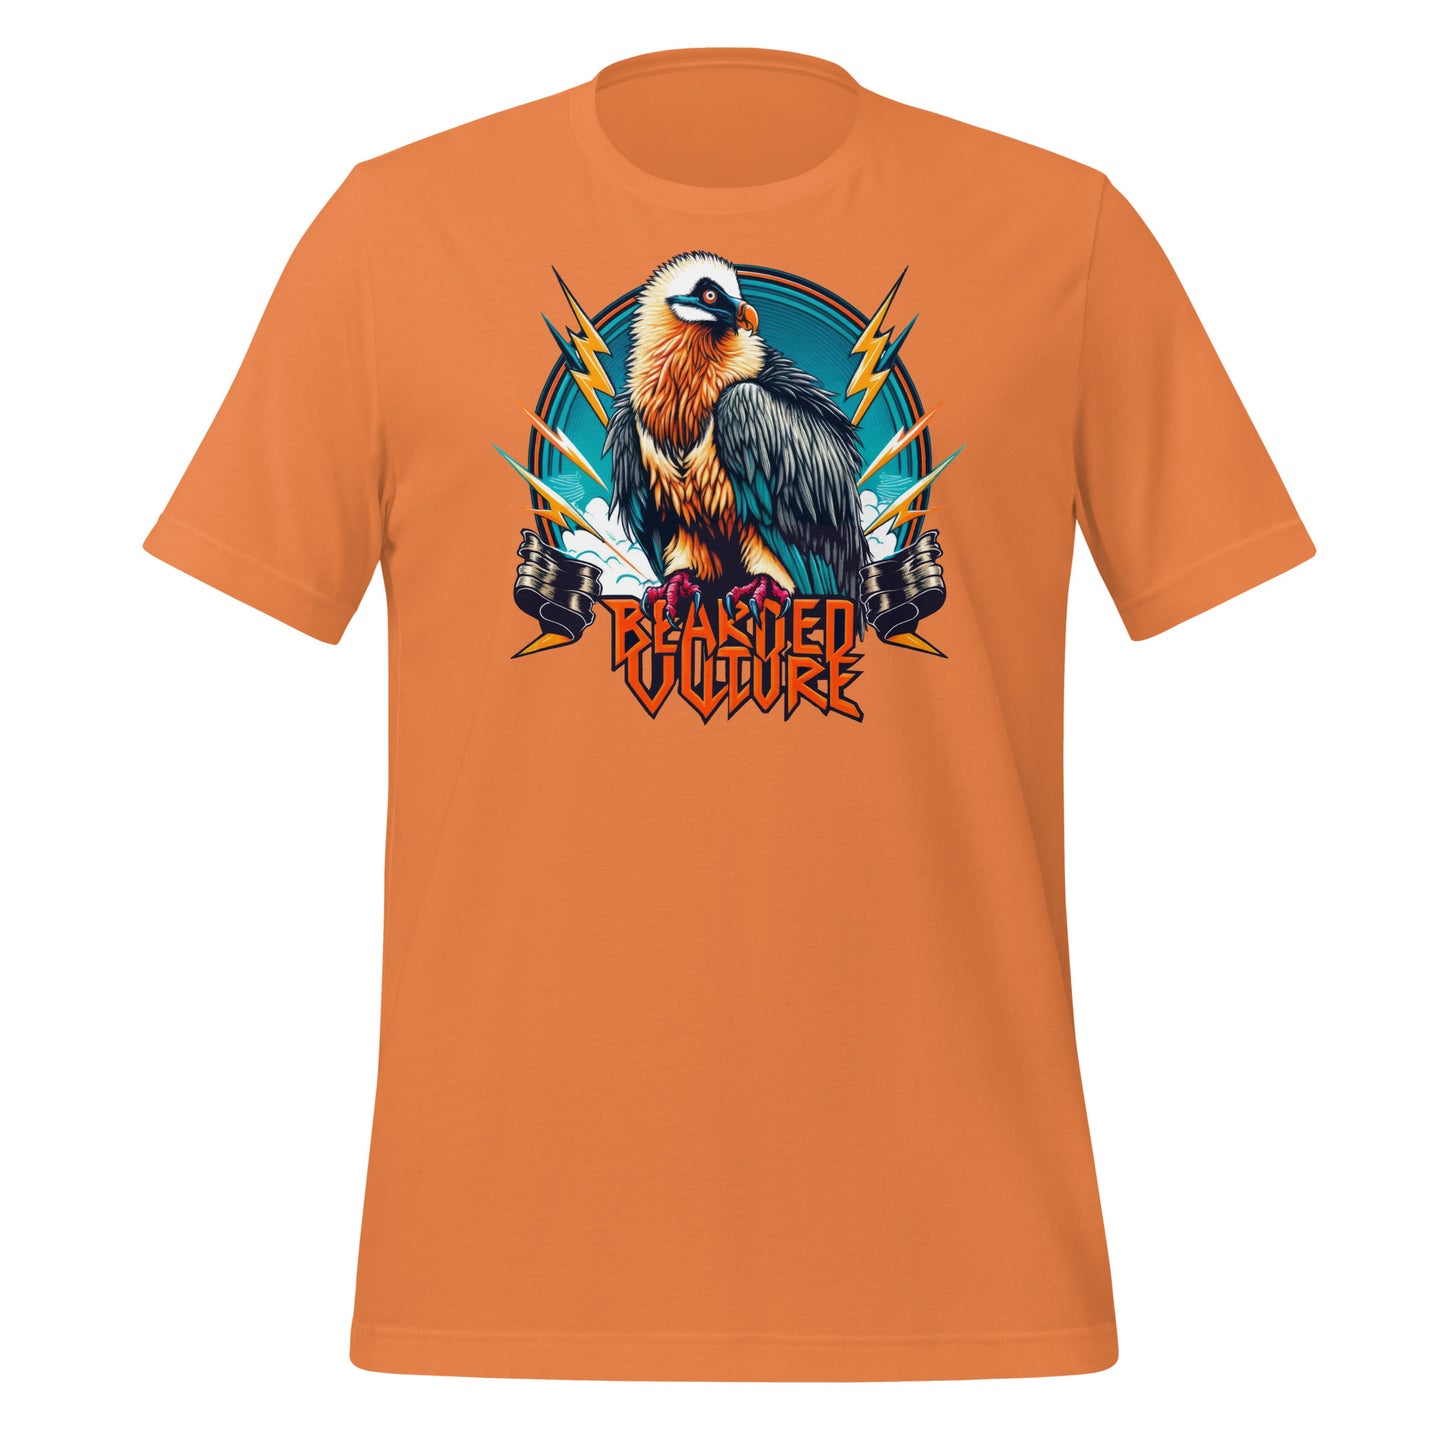 Bearded Vulture Lightweight Cotton Unisex T-Shirt